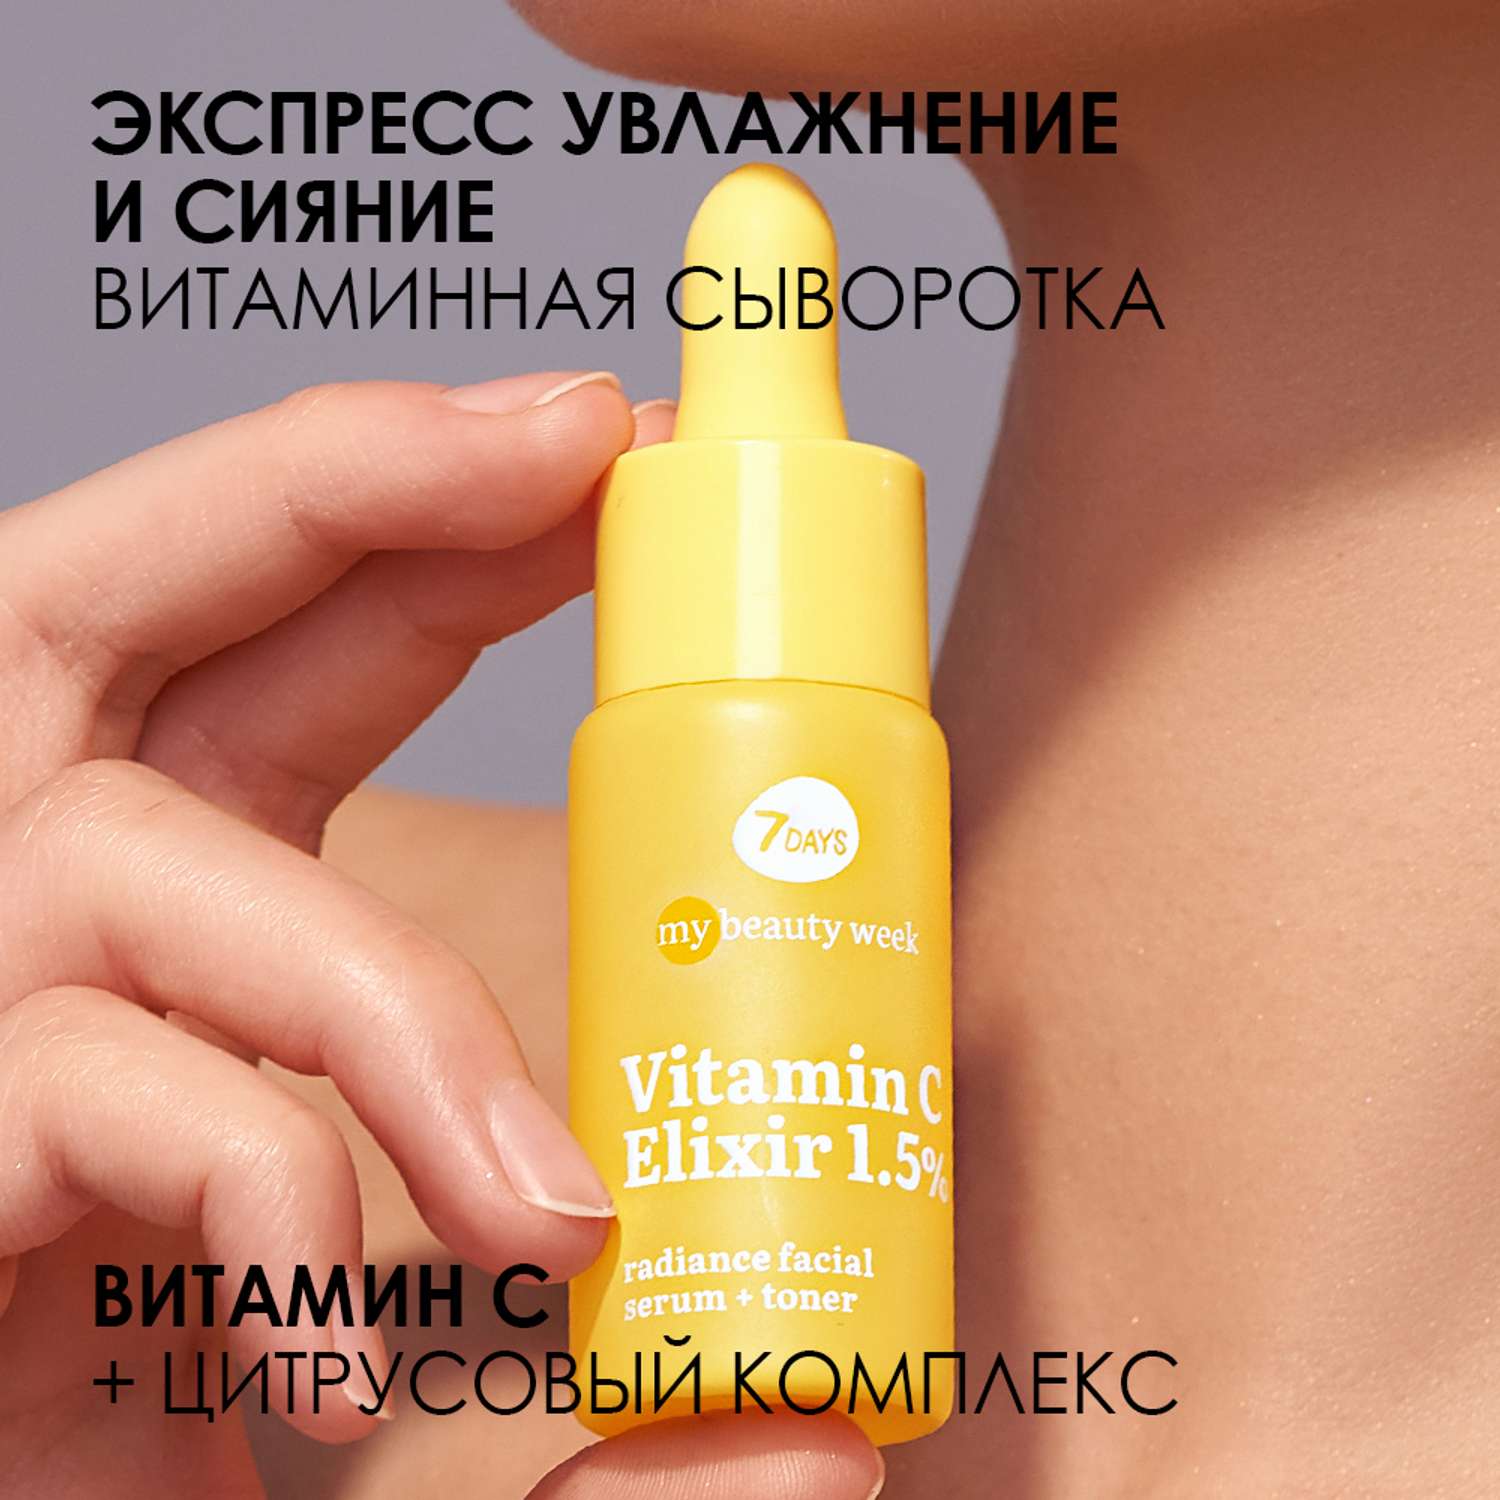 Сыворотка для лица 7DAYS Vitamin С elixir 1.5% придающая сияние коже - фото 3